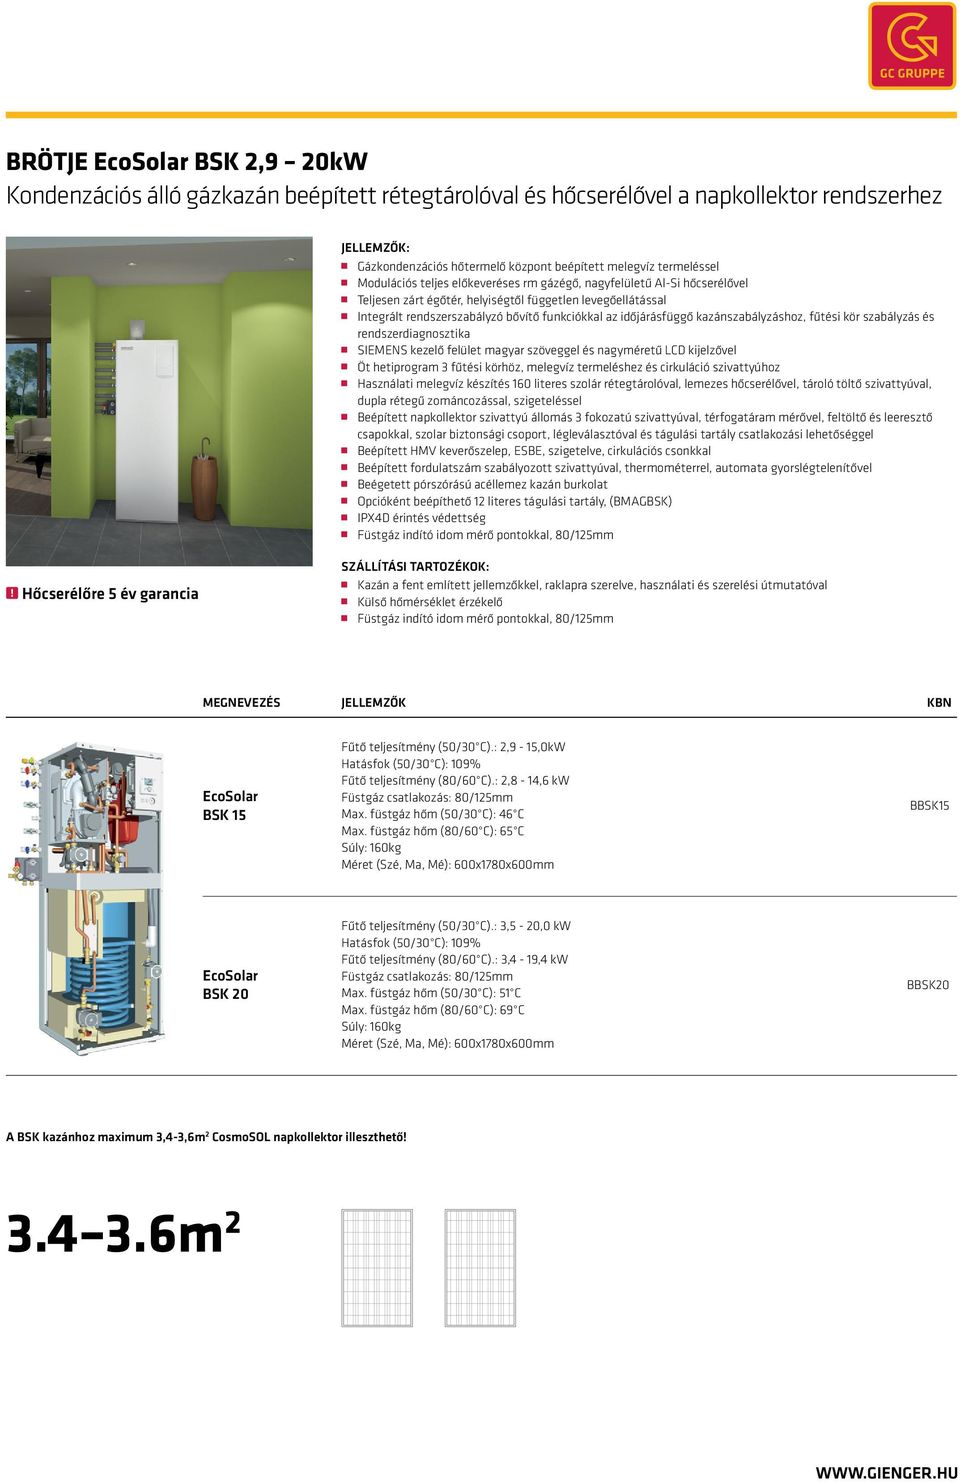 kazánszabályzáshoz, fűtési kör szabályzás és rendszerdiagnosztika SIEMENS kezelő felület magyar szöveggel és nagyméretű LCD kijelzővel Öt hetiprogram 3 fűtési körhöz, melegvíz termeléshez és